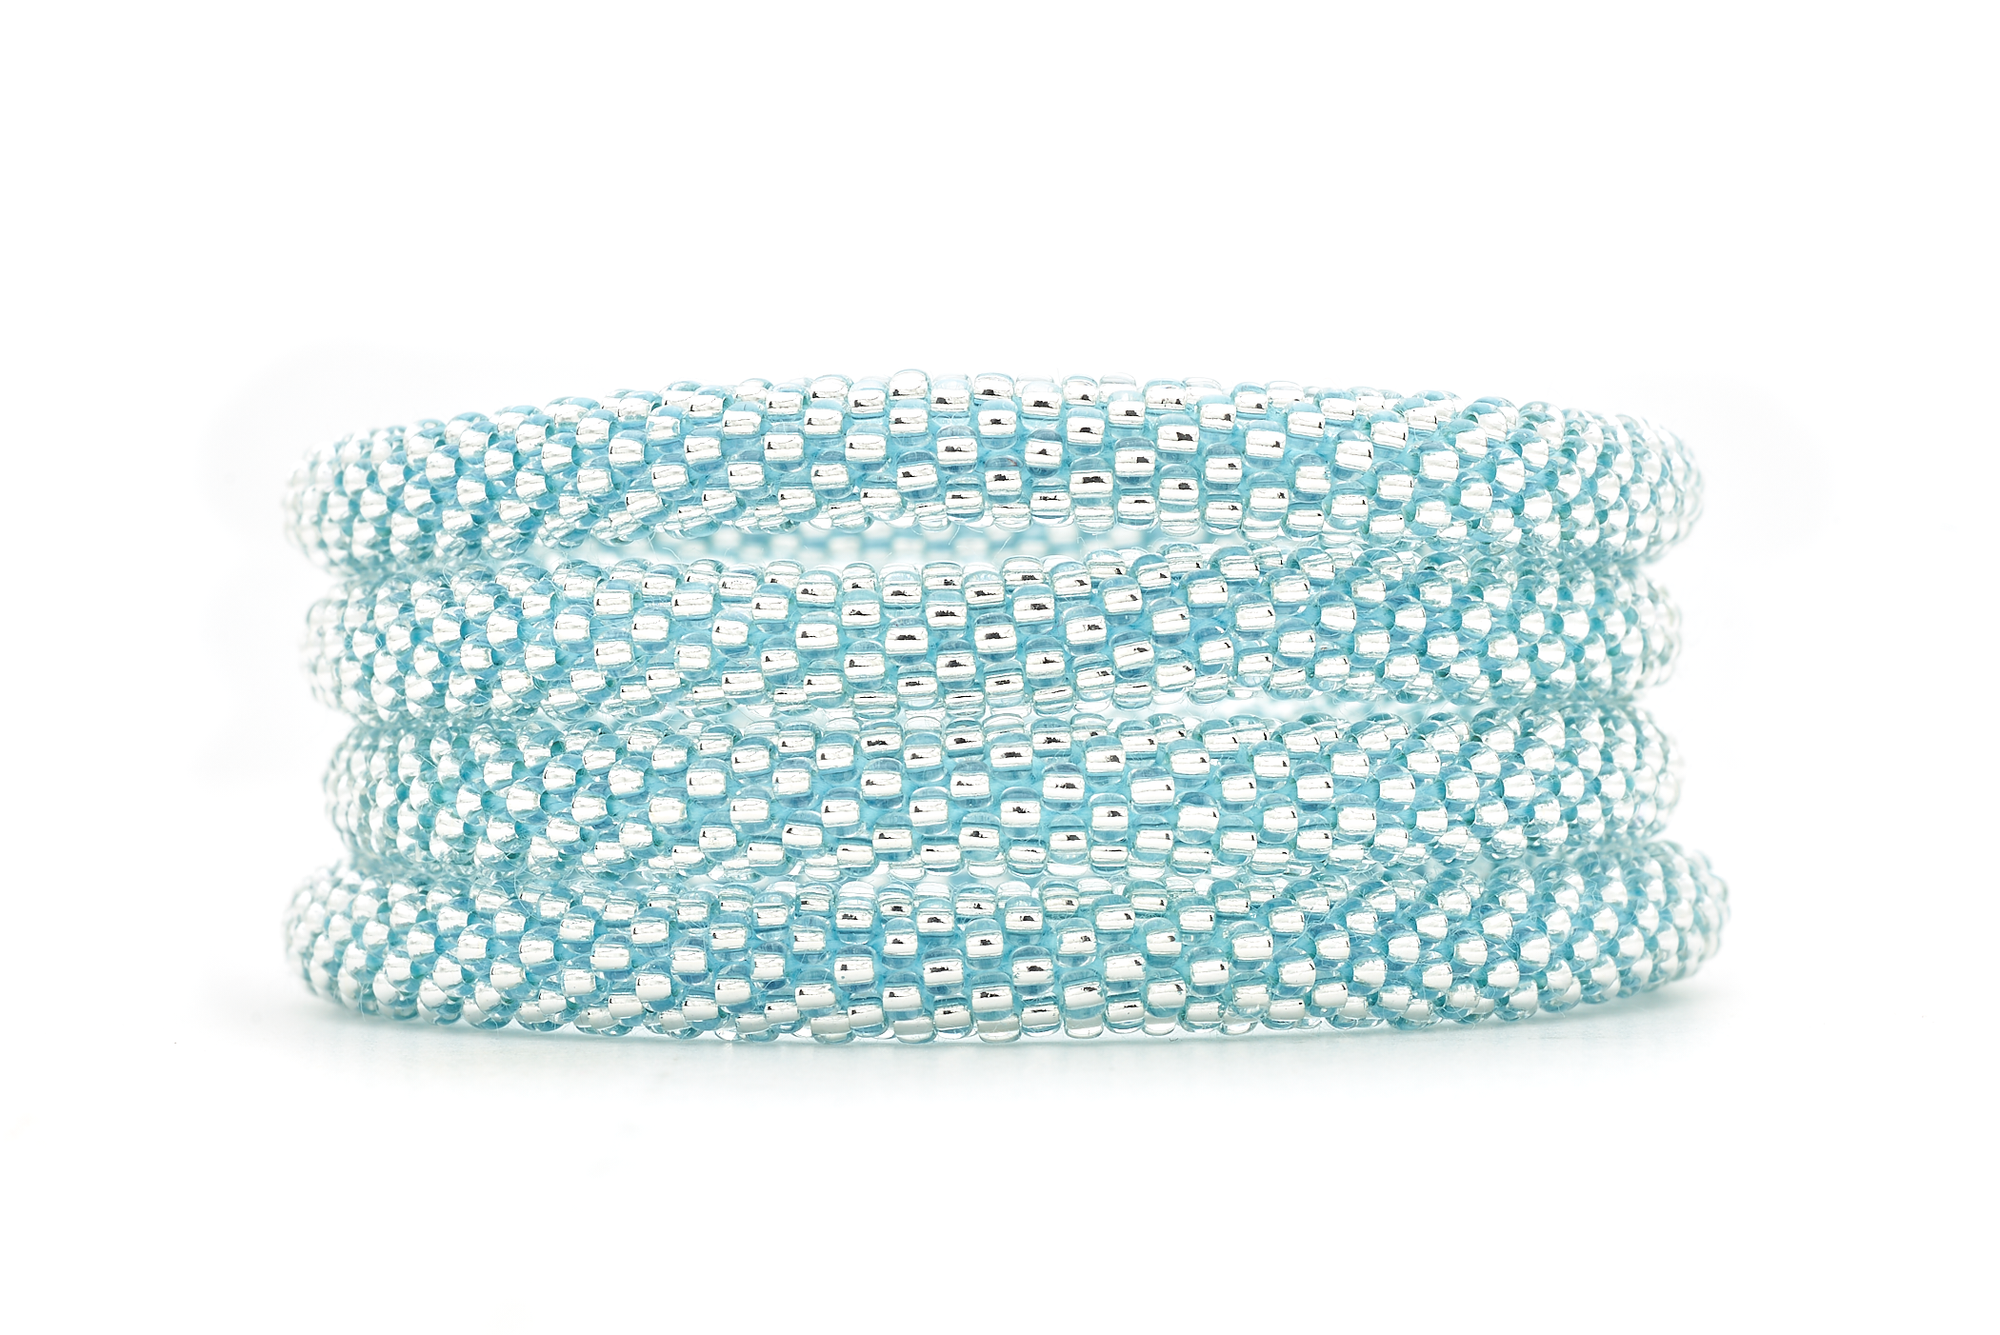 Sashka Co. Extended 8" Bracelet Clear Bead with Blue Thread Blue Diamond Sparkle - Extended 8"